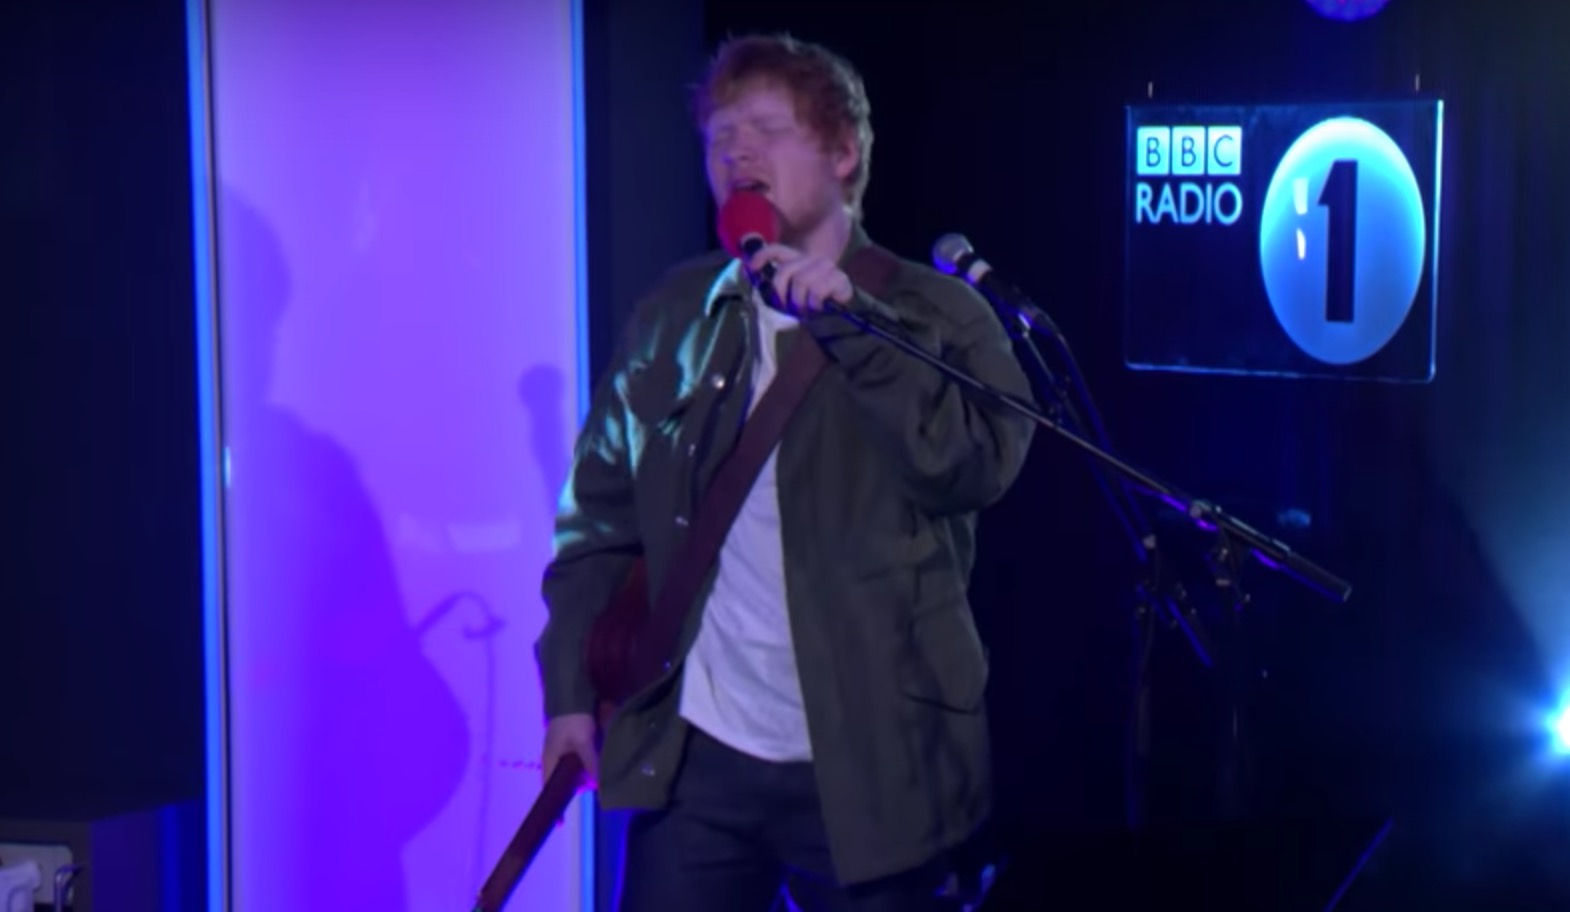 Ed Sheeran versiona ‘Touch’ de Little Mix y presenta ‘Shape Of You’ en BBC Radio 1